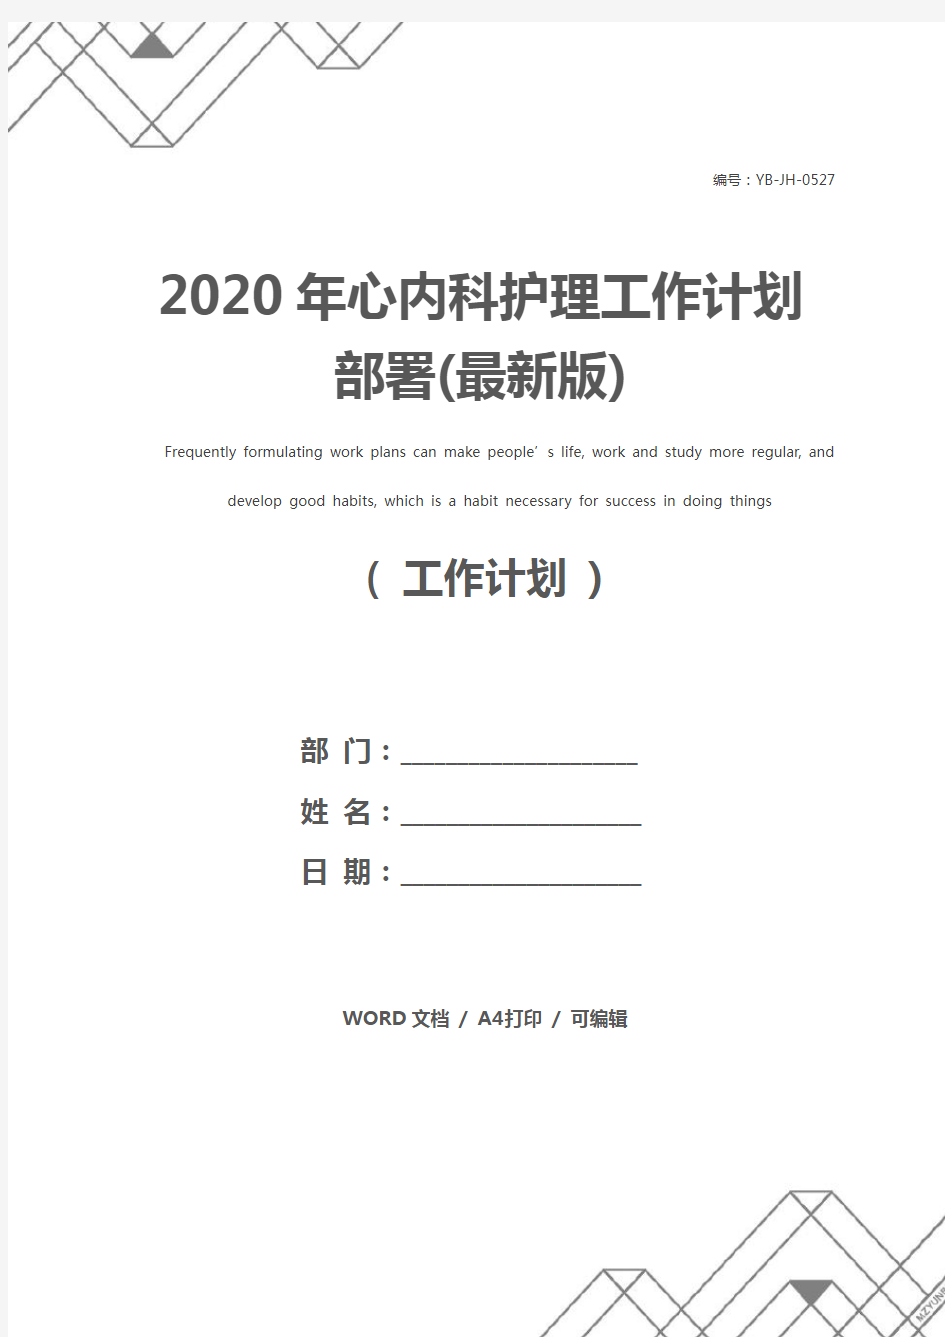 2020年心内科护理工作计划部署(最新版)